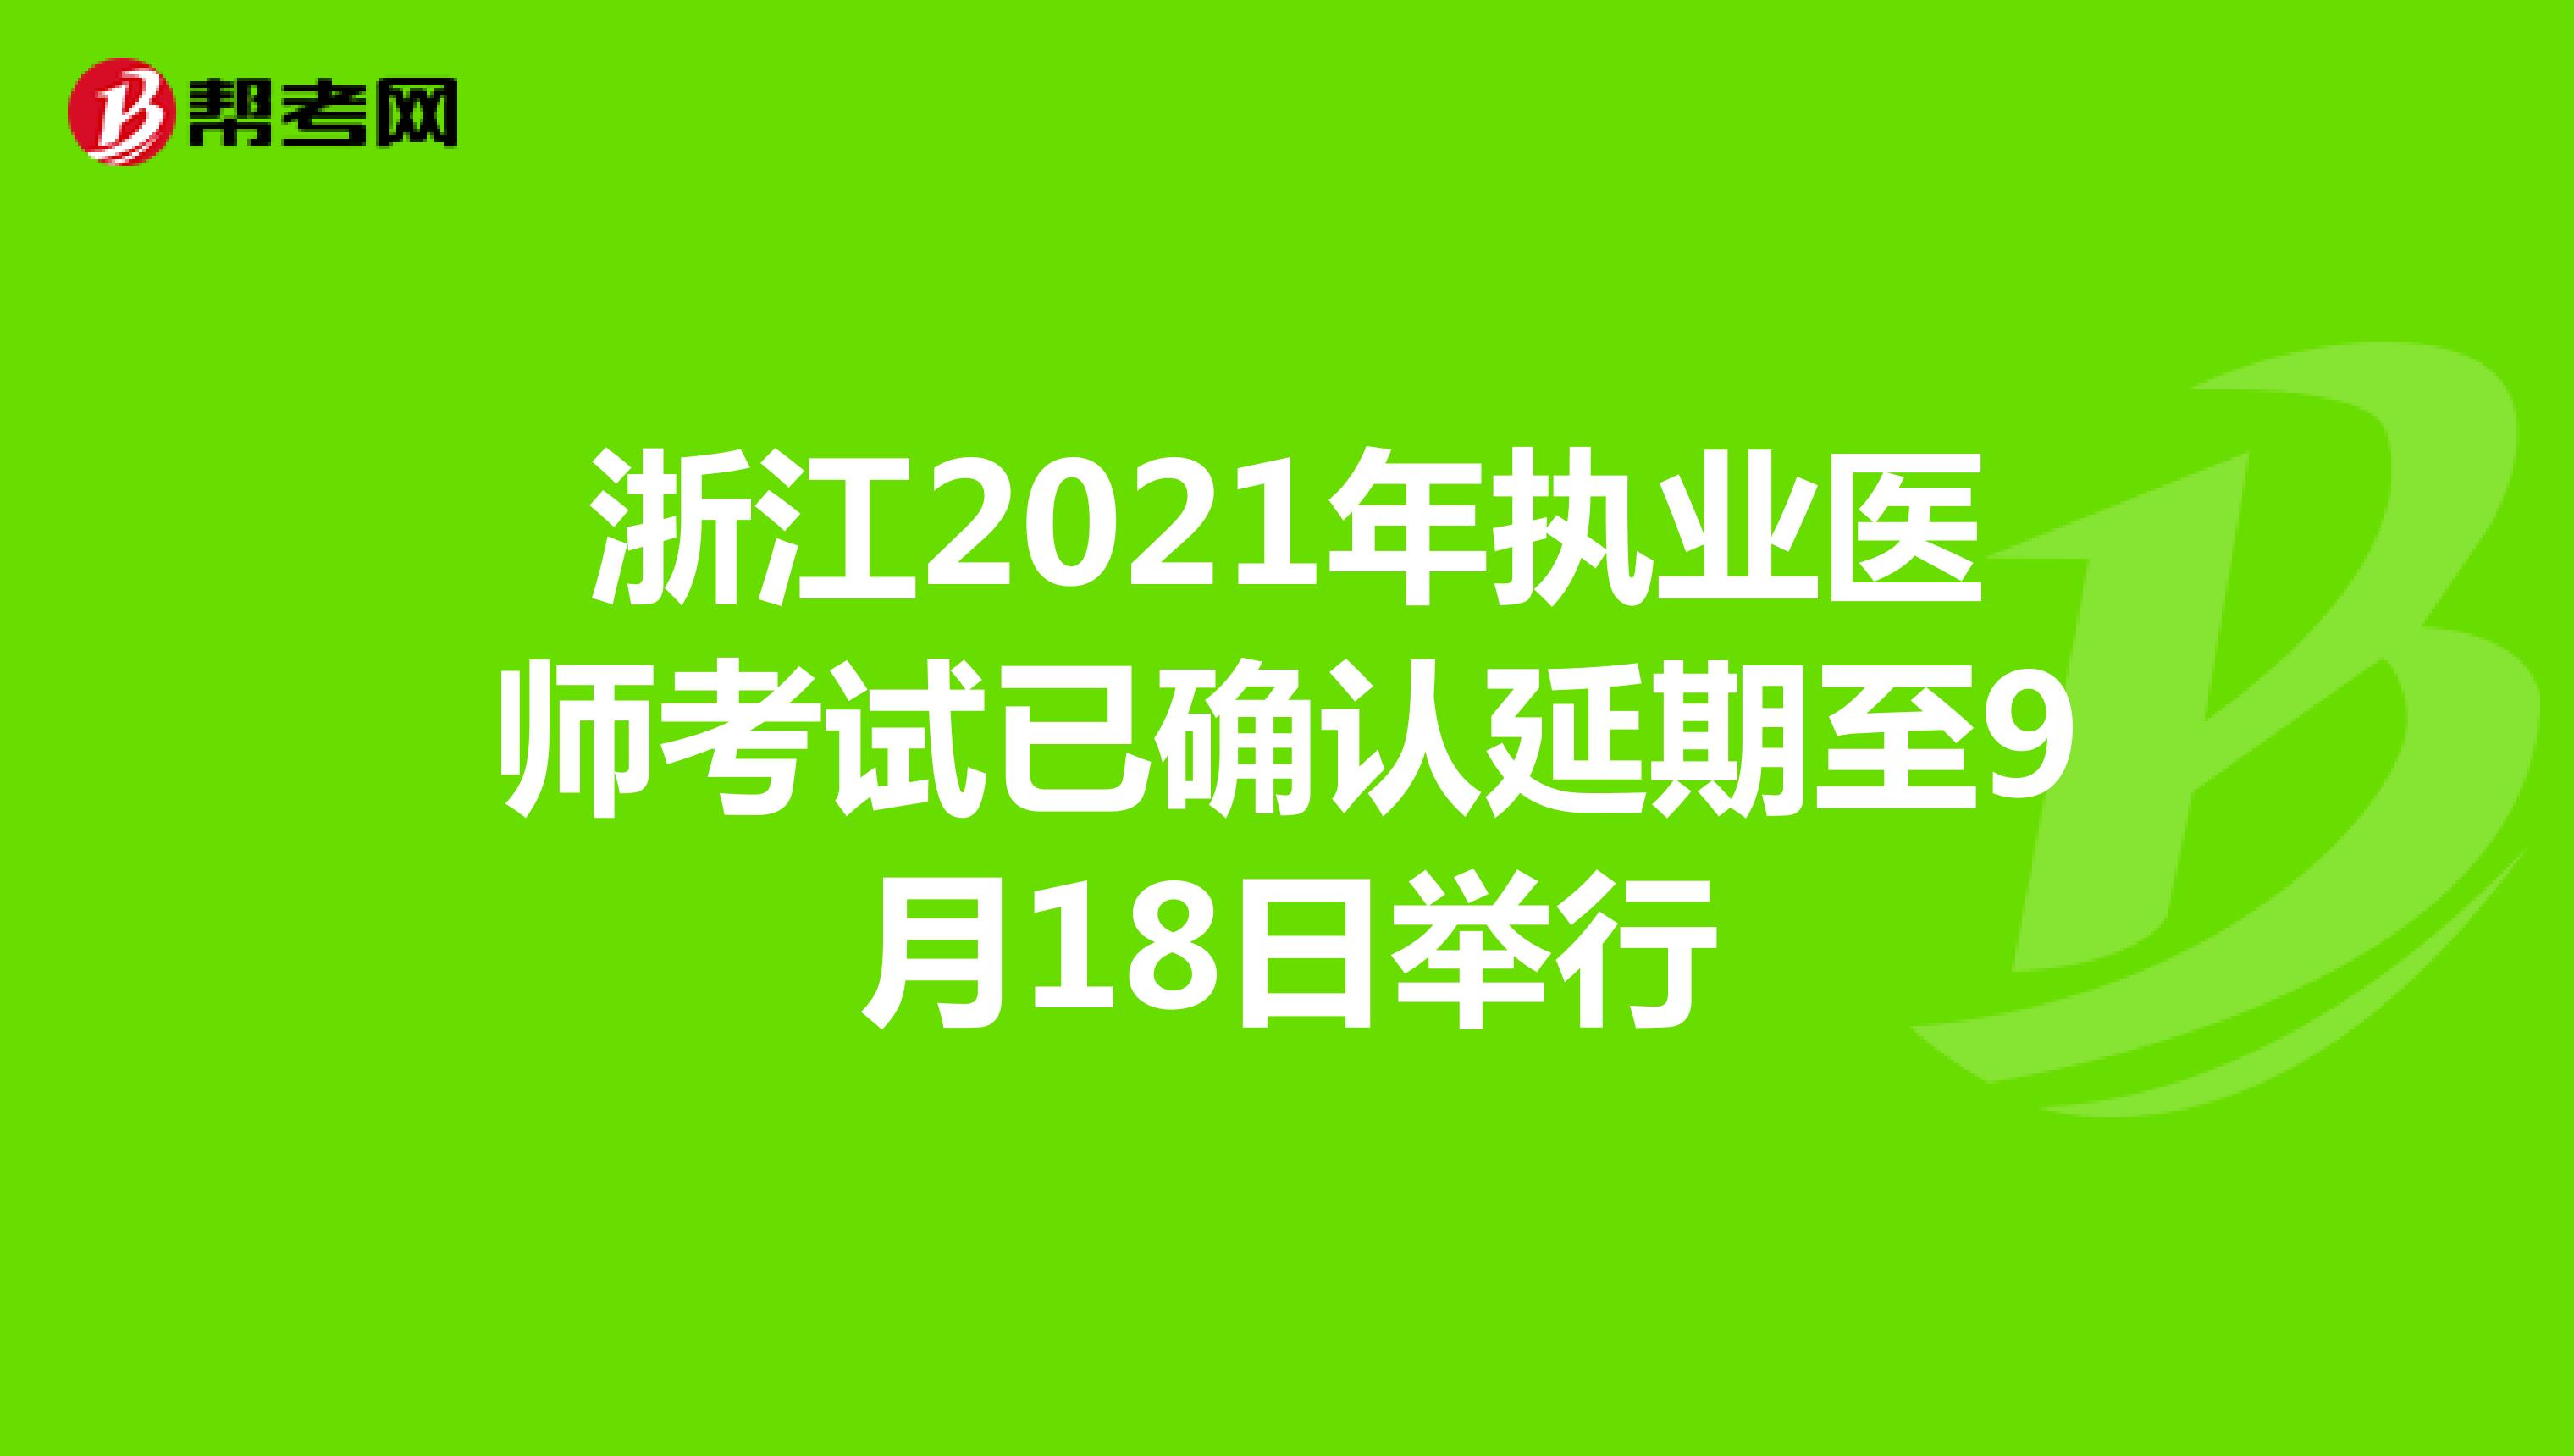 浙江2021年执业医师考试已确认延期至9月18日举行